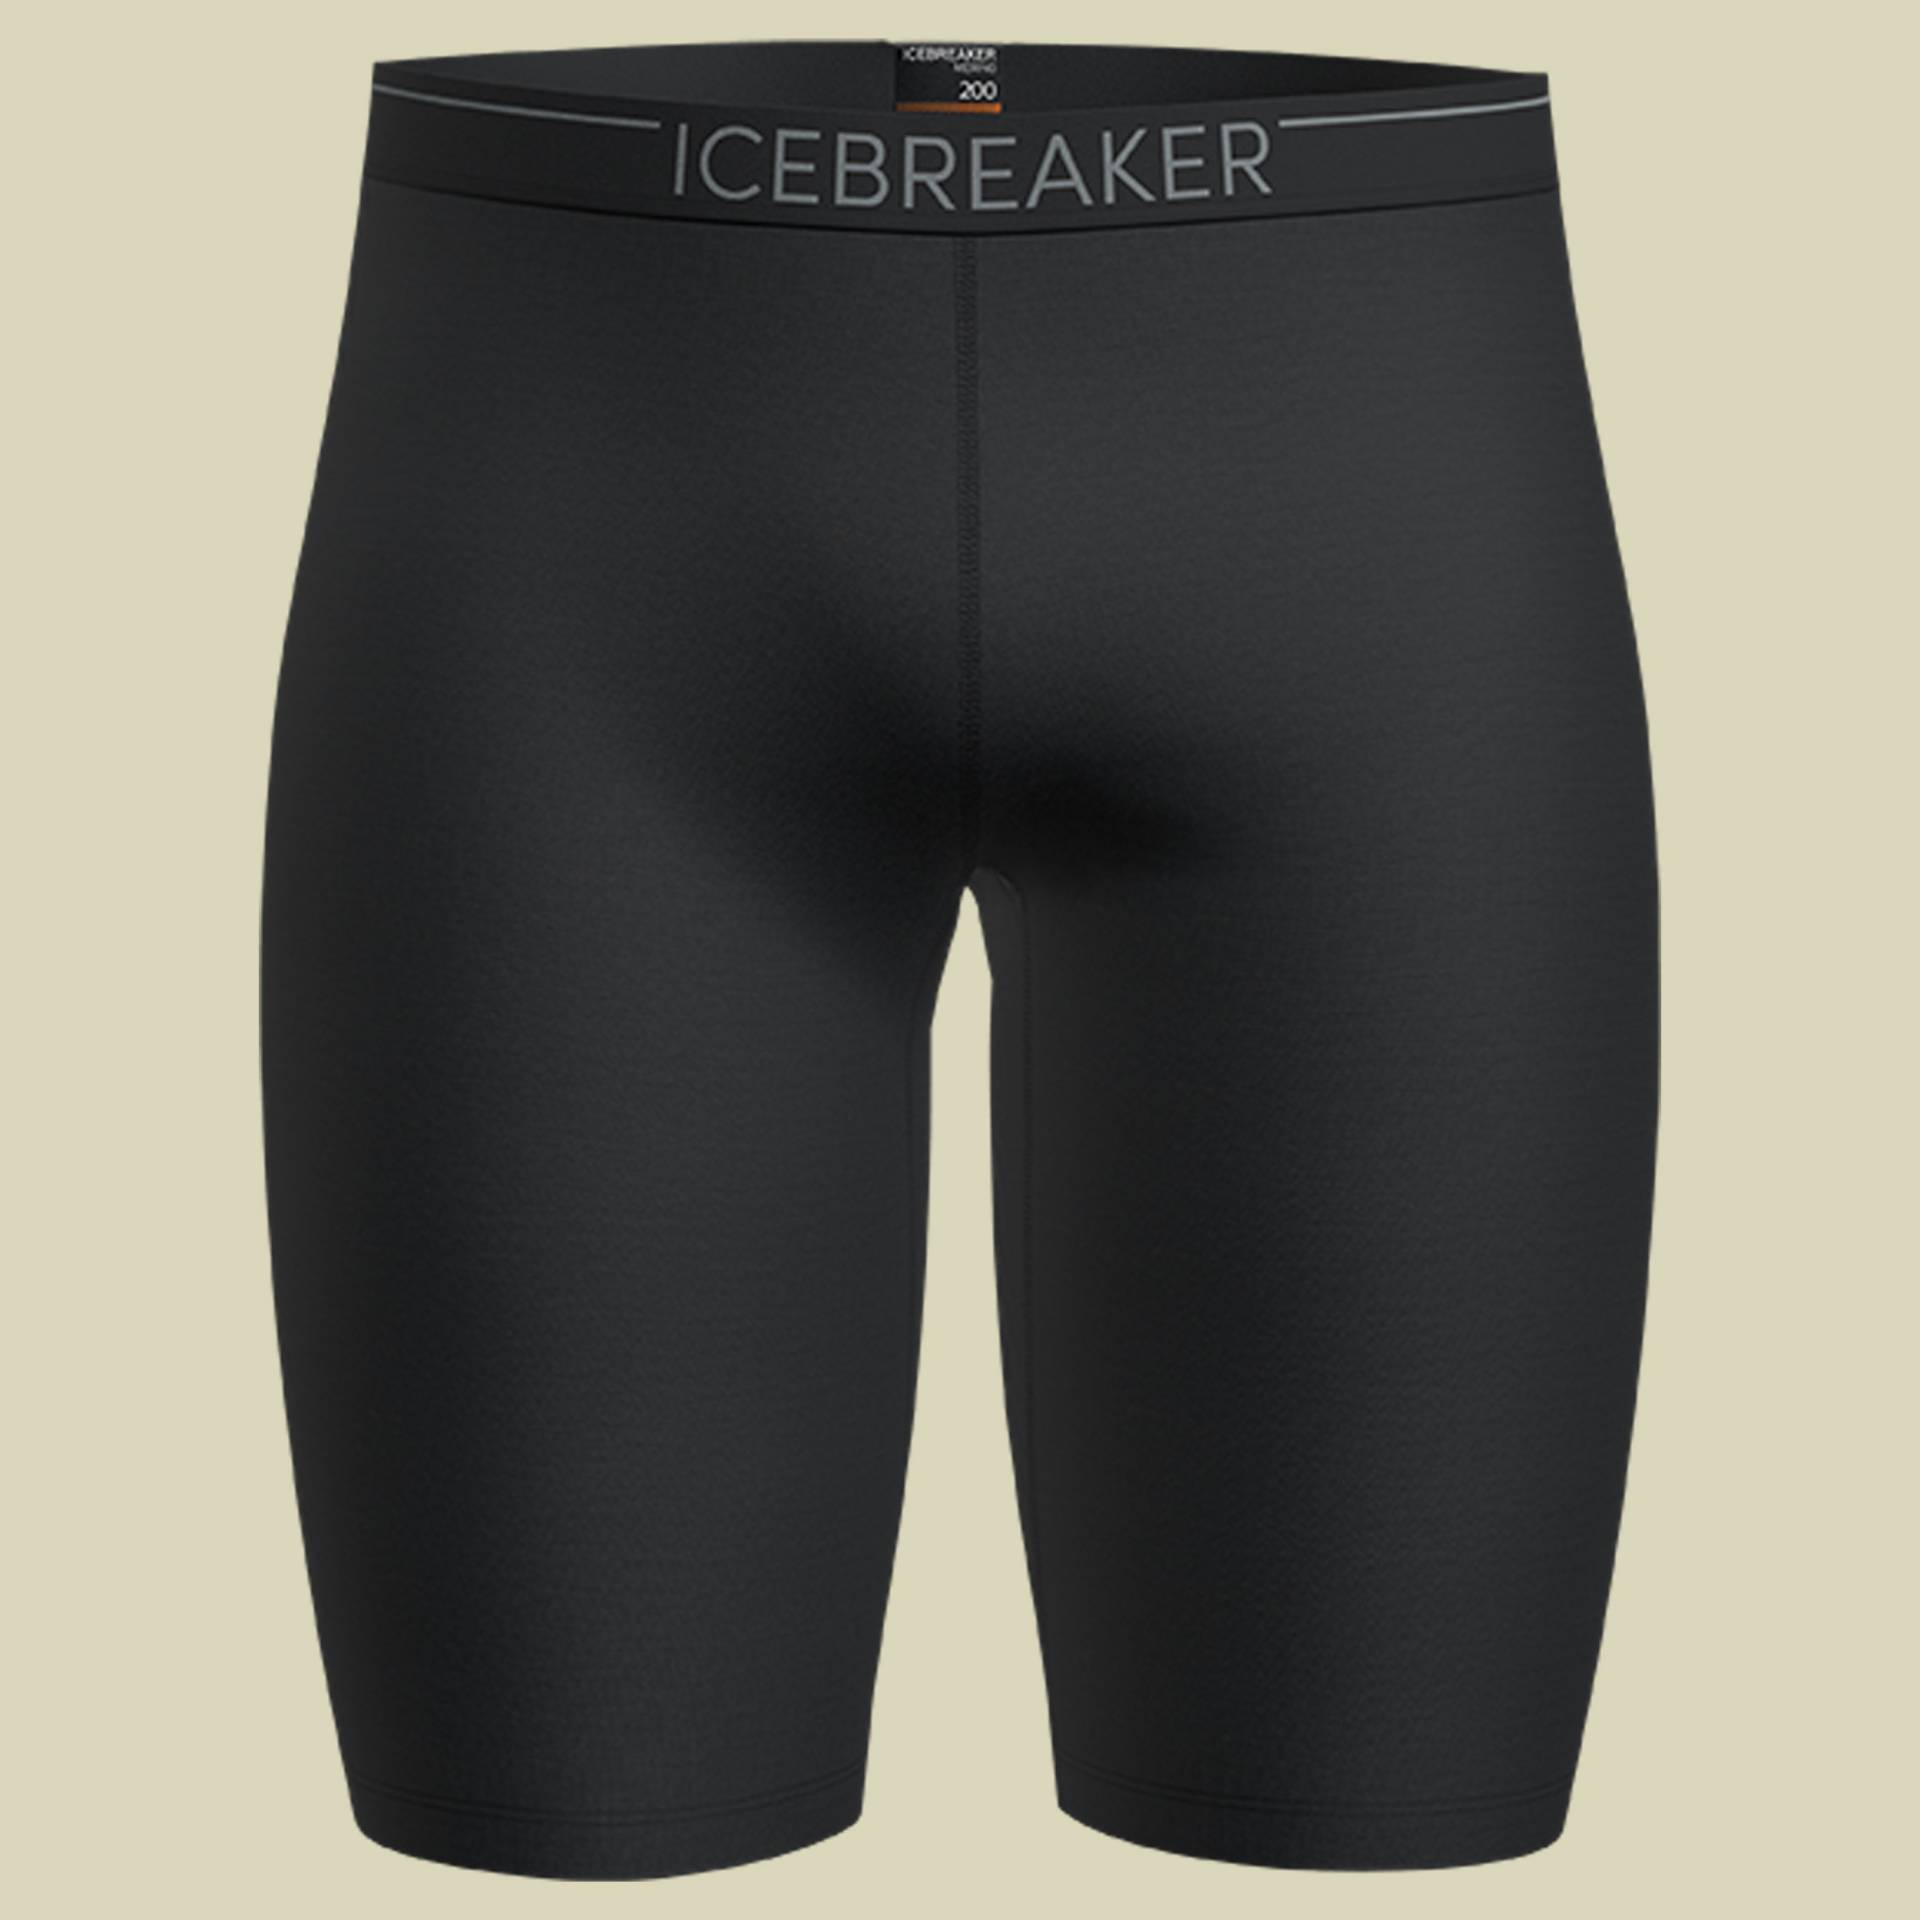 Oasis Shorts Men 200 Größe XL Farbe black von Icebreaker